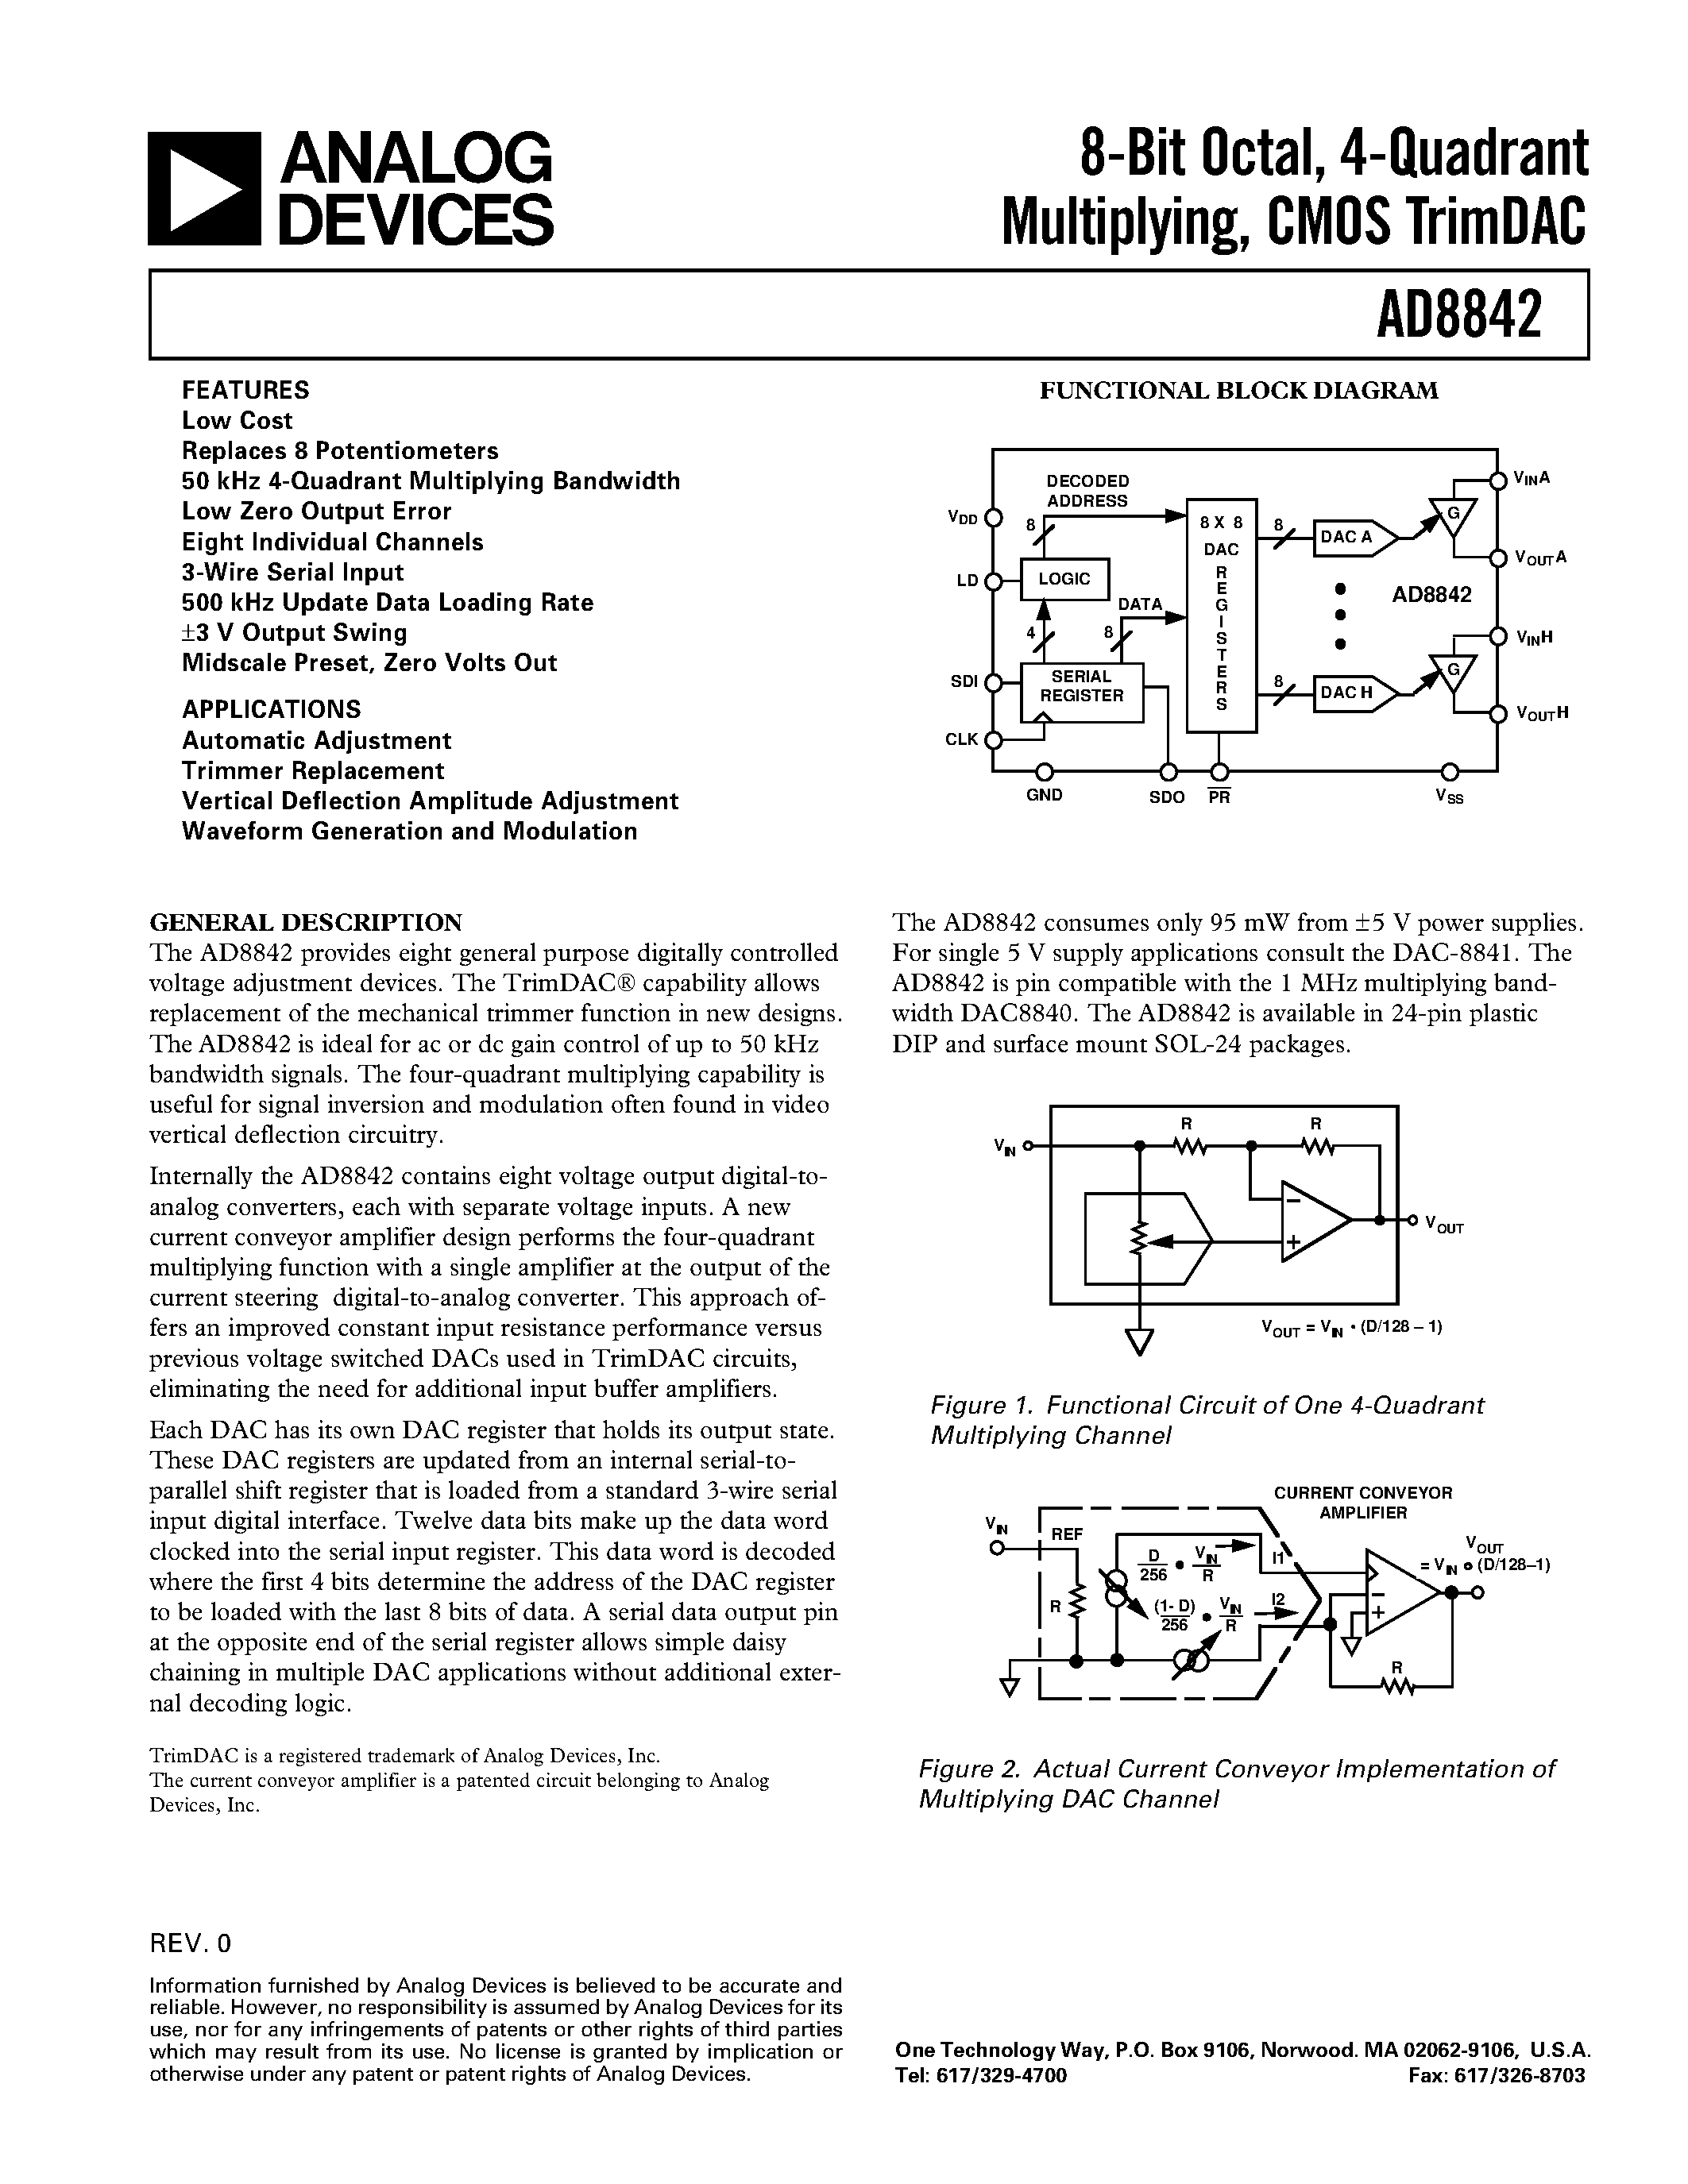 Даташит AD8842AR - 8-Bit Octal/ 4-Quadrant Multiplying/ CMOS TrimDAC страница 1